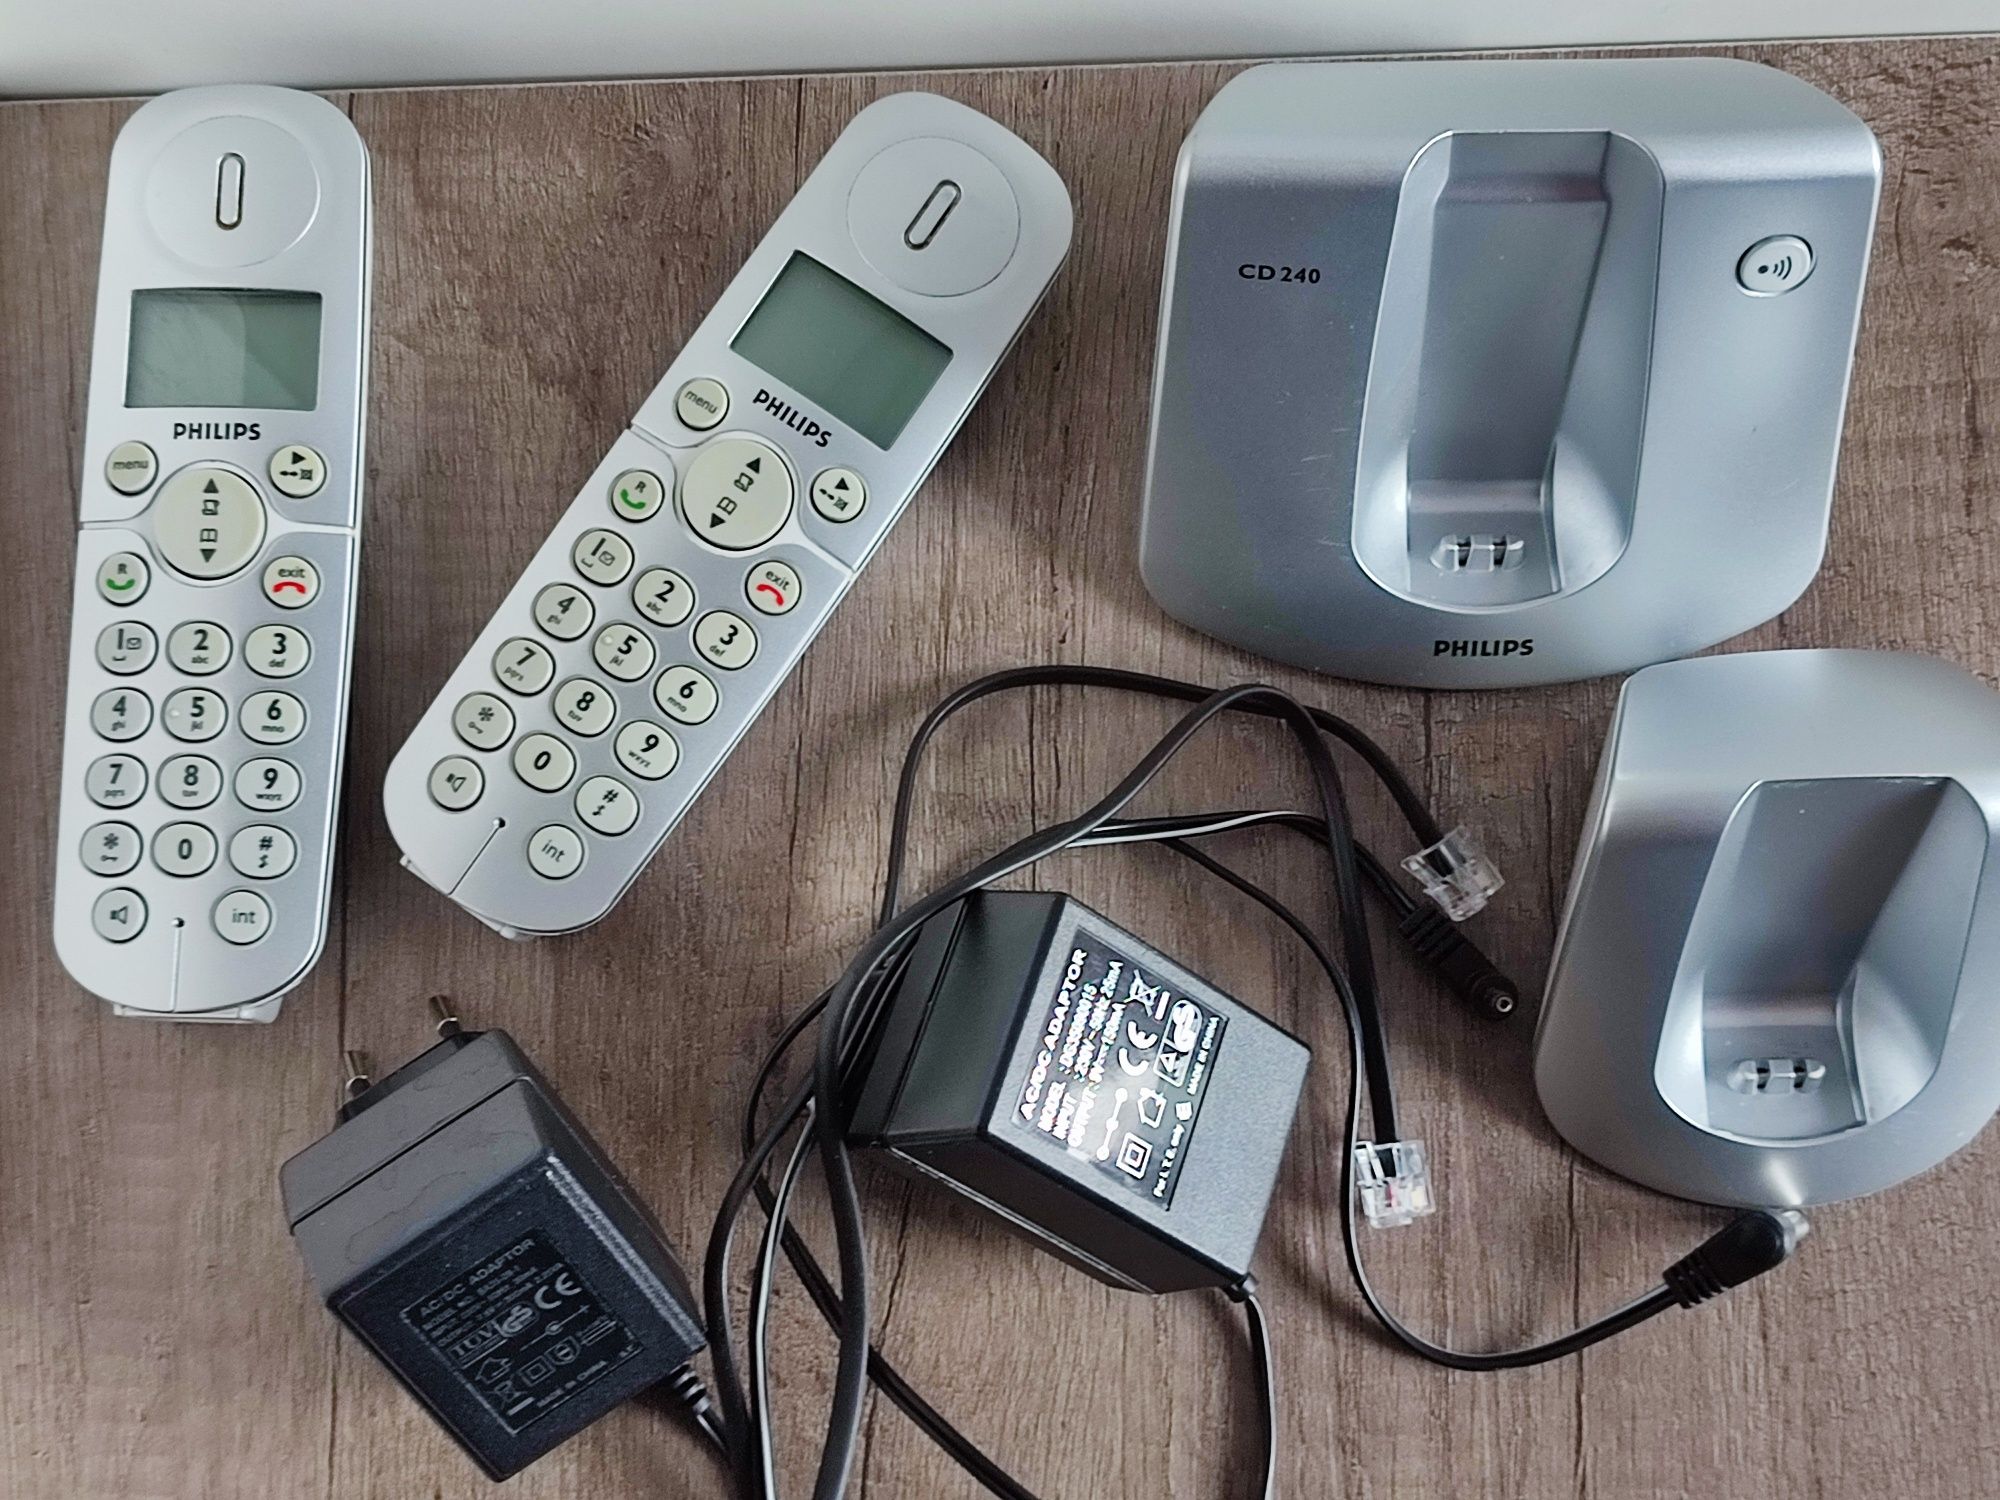 Telefon bezprzewodowy Philips CD240 Duo